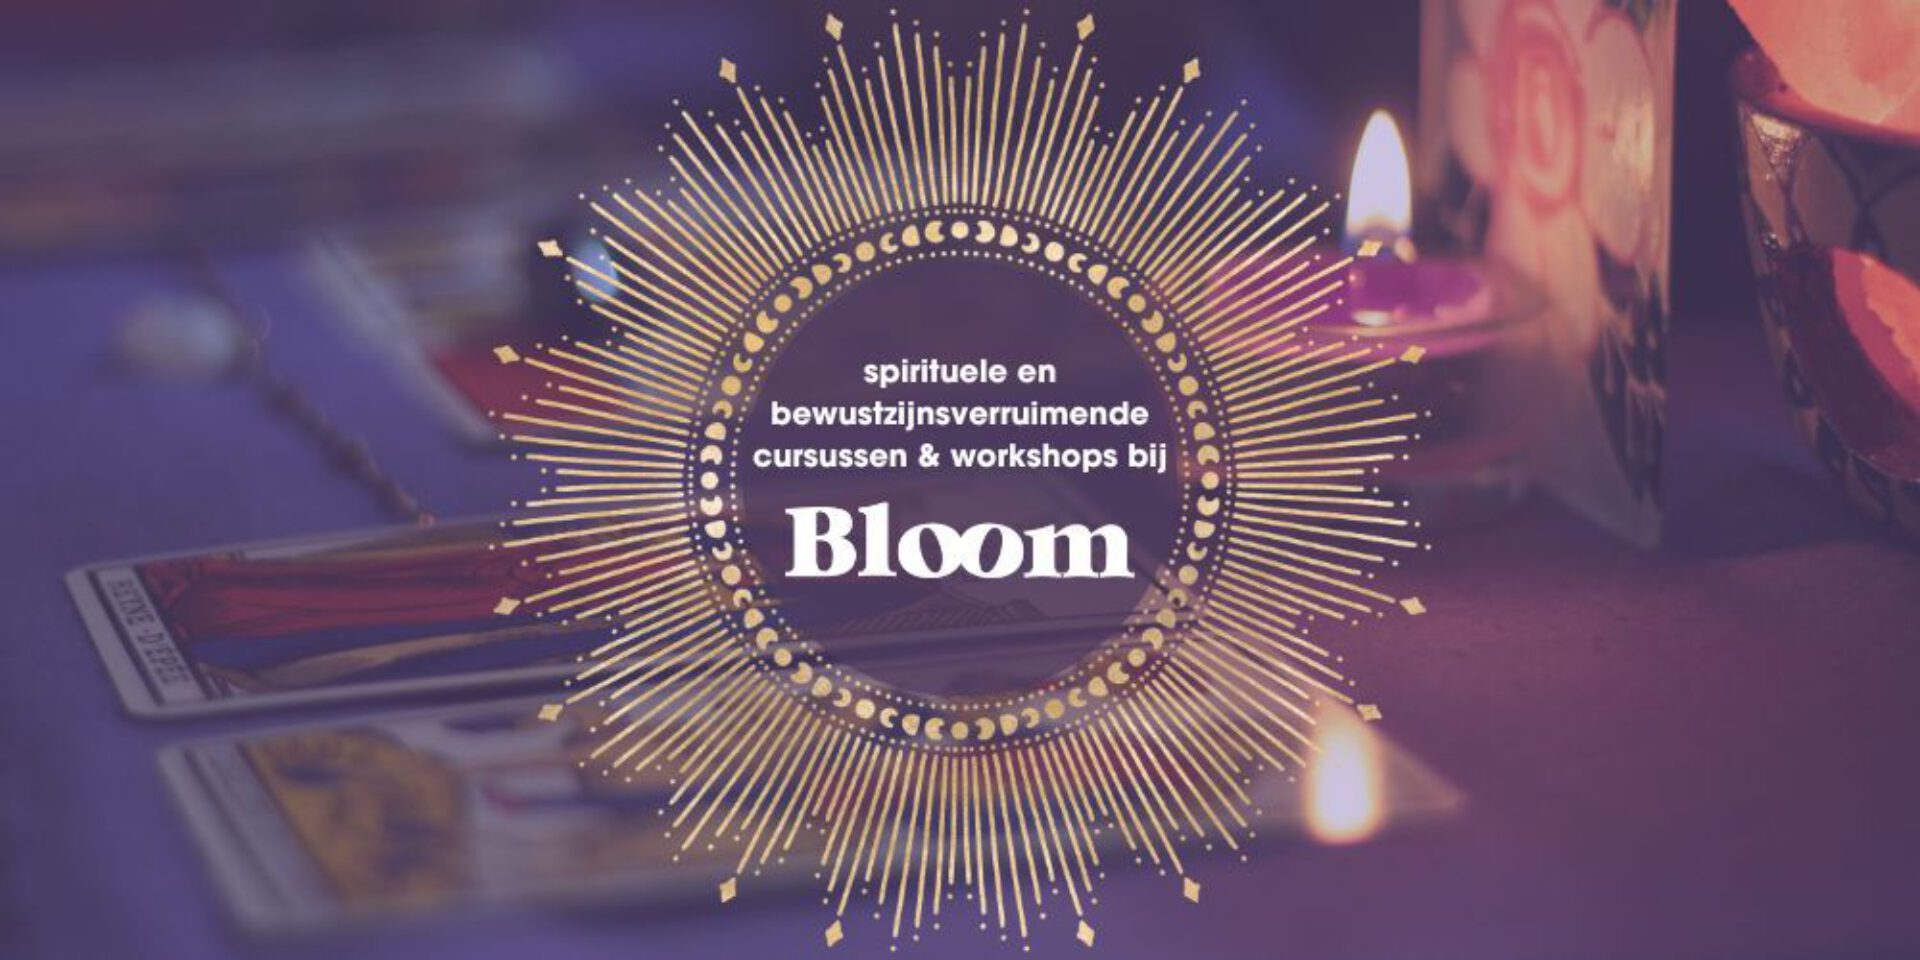 Cursussen & workshops bij Bloom